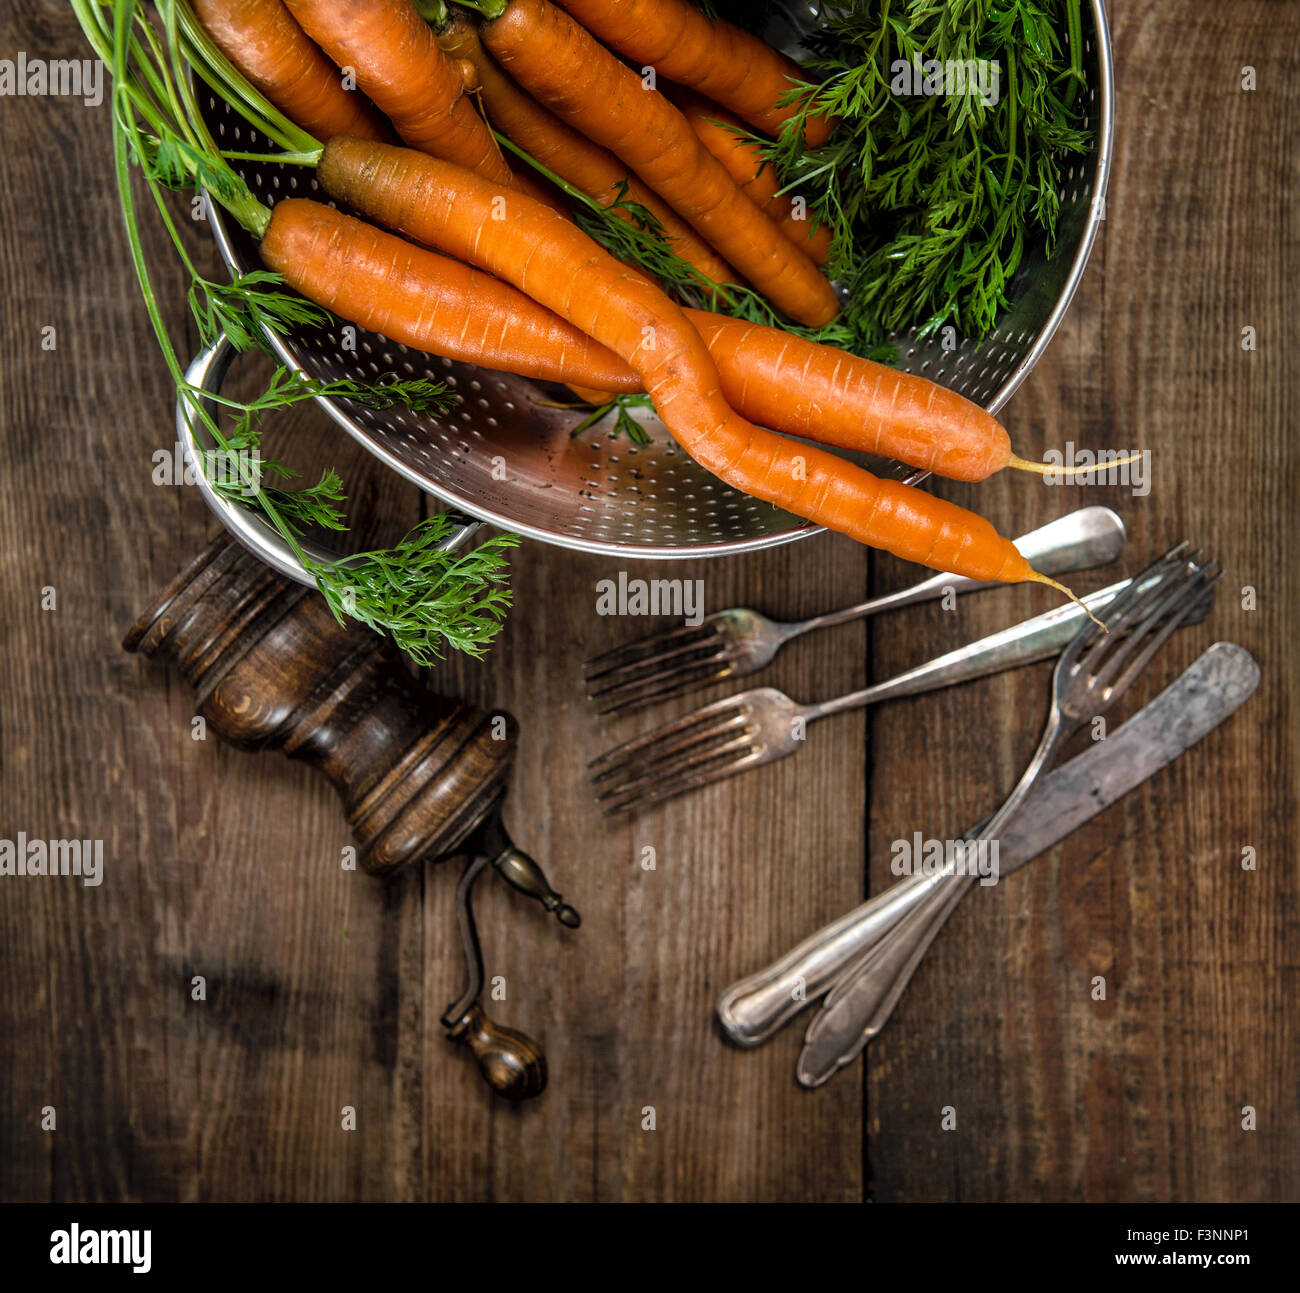 Les carottes avec feuilles vertes sur fond de bois rustique. Alimentation saine. Légumes Banque D'Images